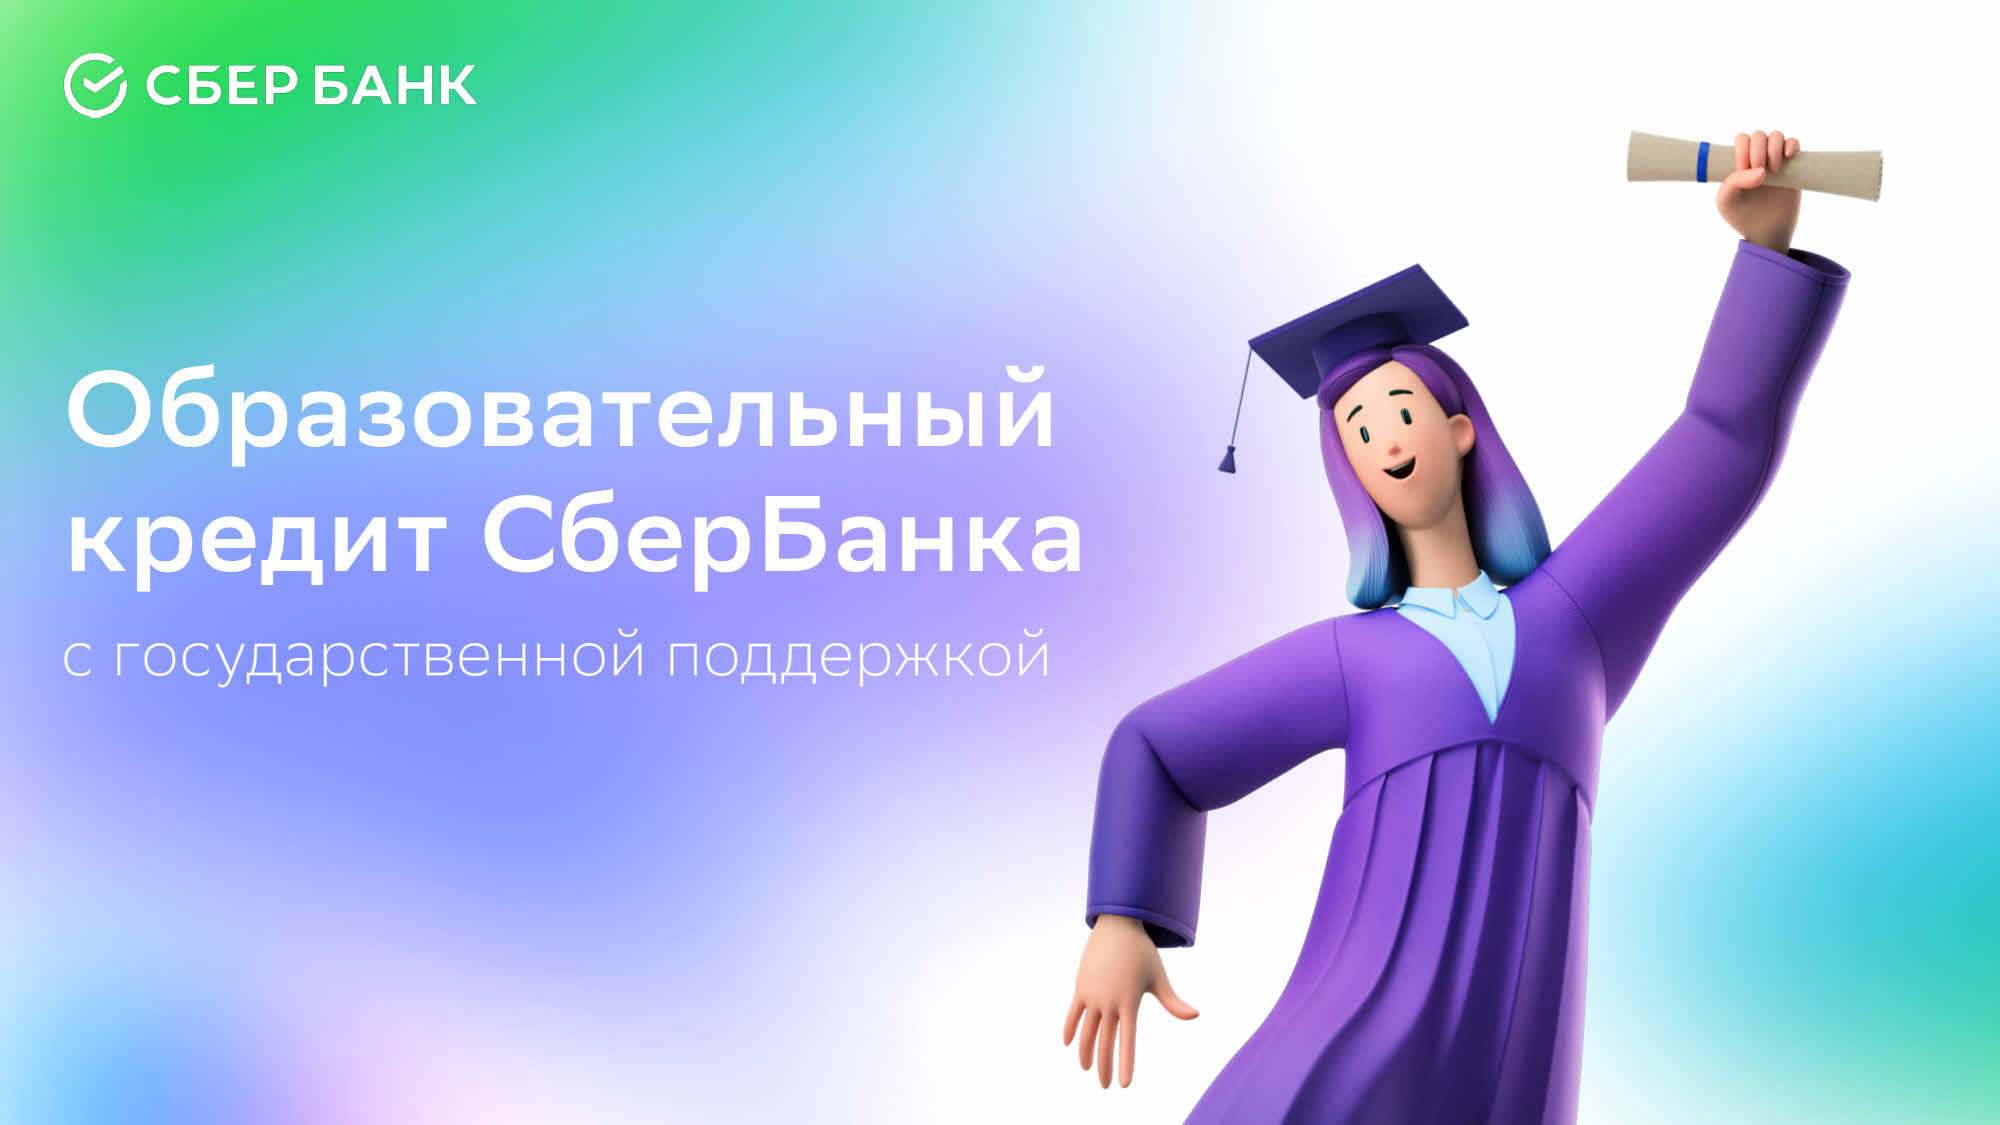 Возможность образовательного кредита от СберБанка.